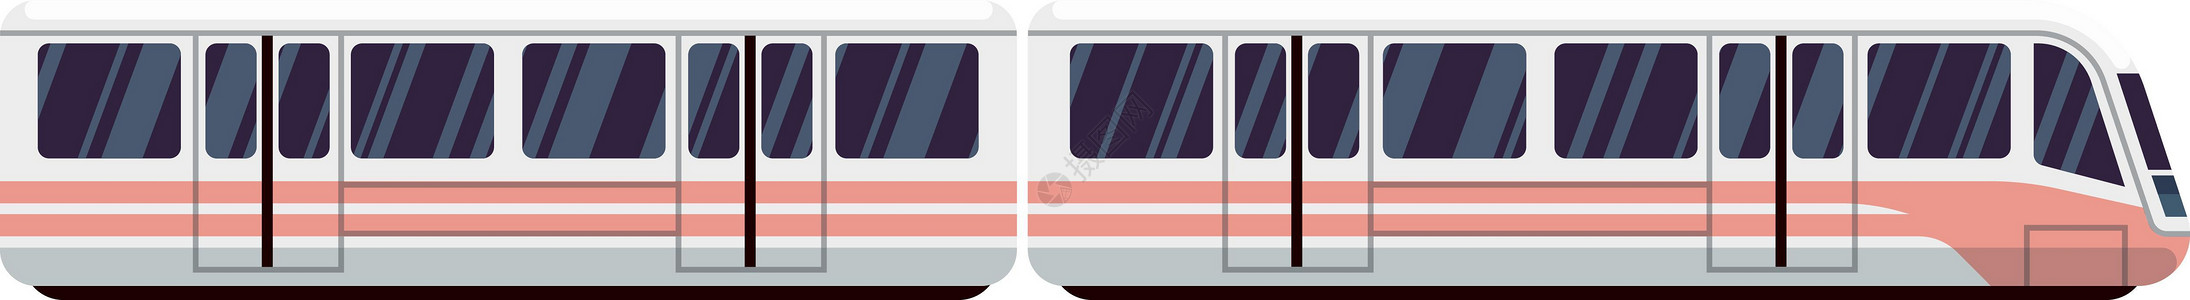 城际铁路列车图标 现代电动地铁或铁路运输插画